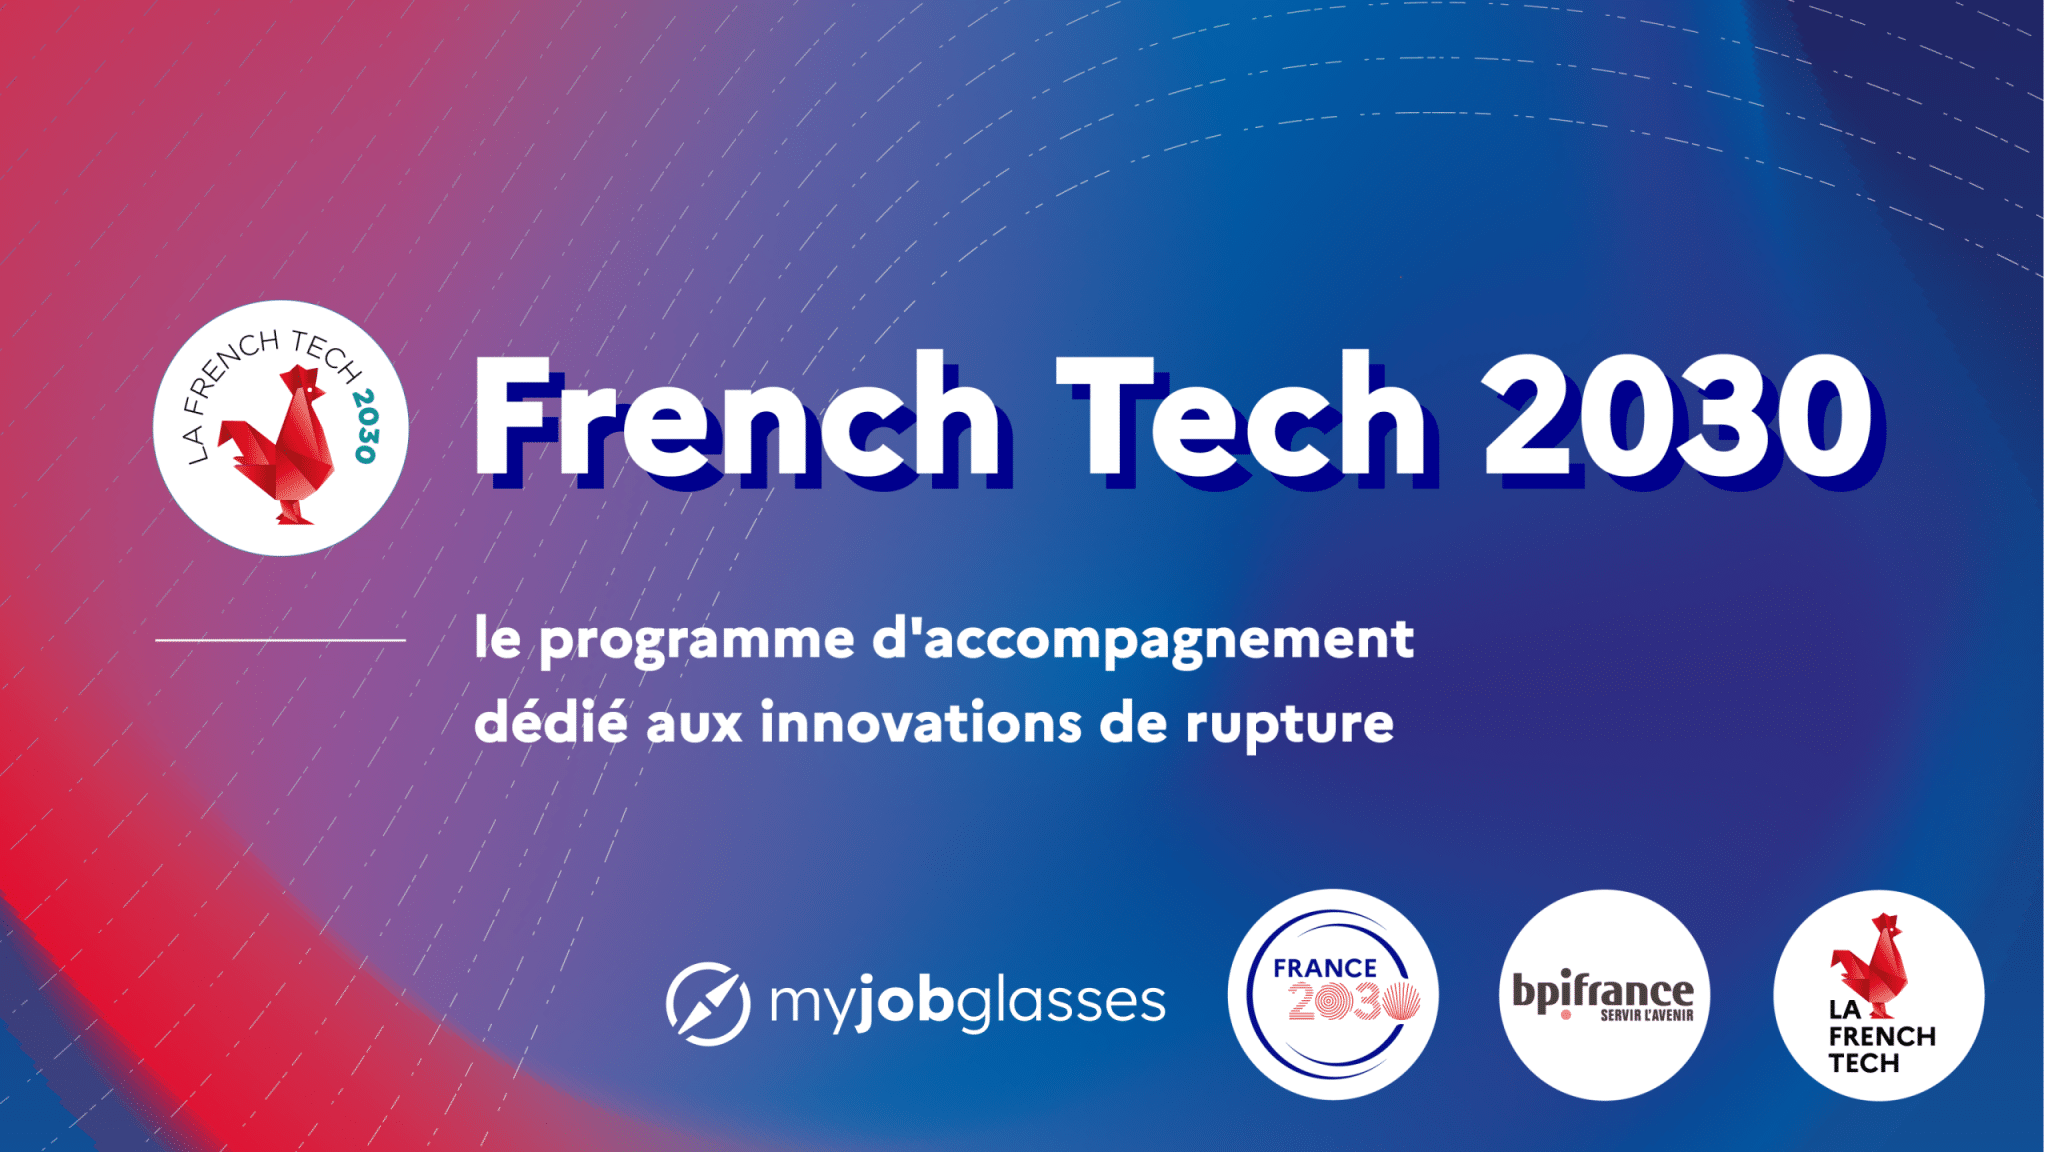 My Job Glasses est lauréate de la première édition du programme French Tech 2030 !